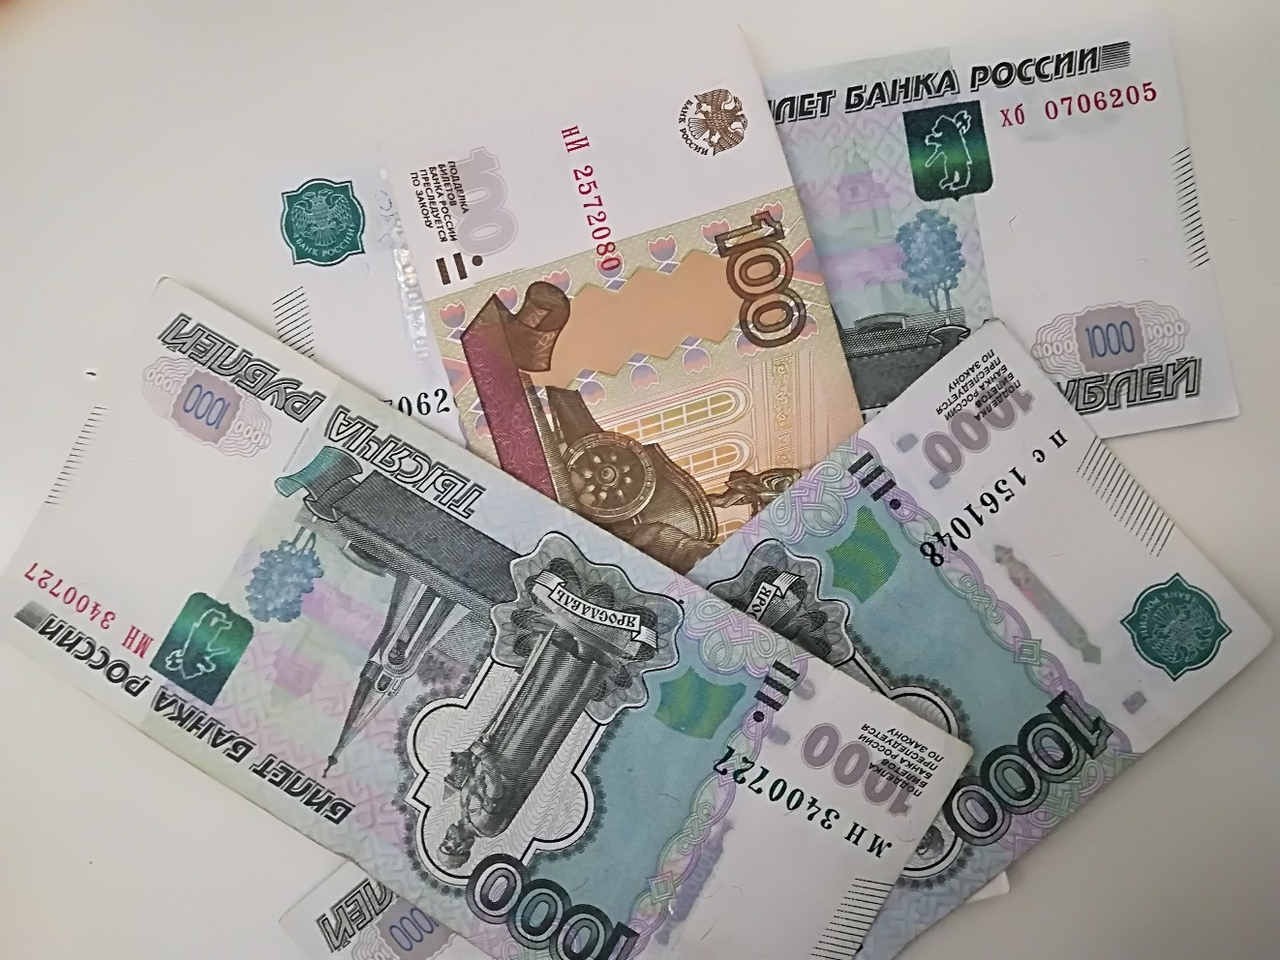 СМИ: Работающих пенсионеров могут оштрафовать на 120 тысяч рублей